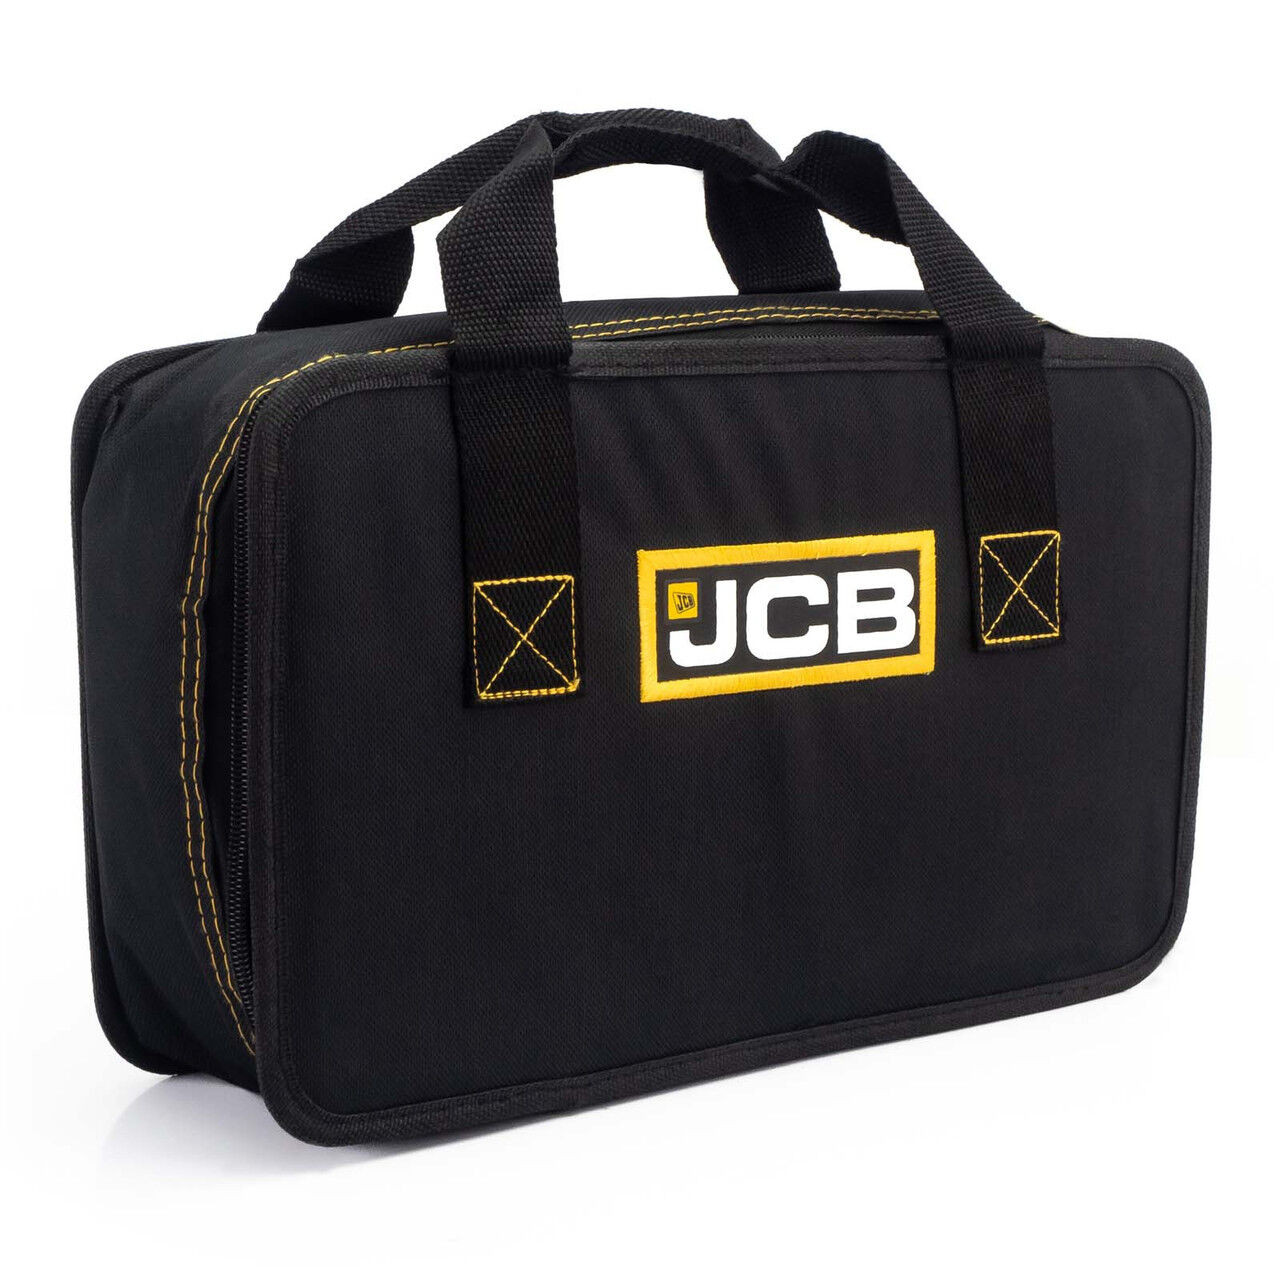 JCB Zipped Power Tool Bag Storage Case, 35 x 11 x 21.5cm   21-ZCASE